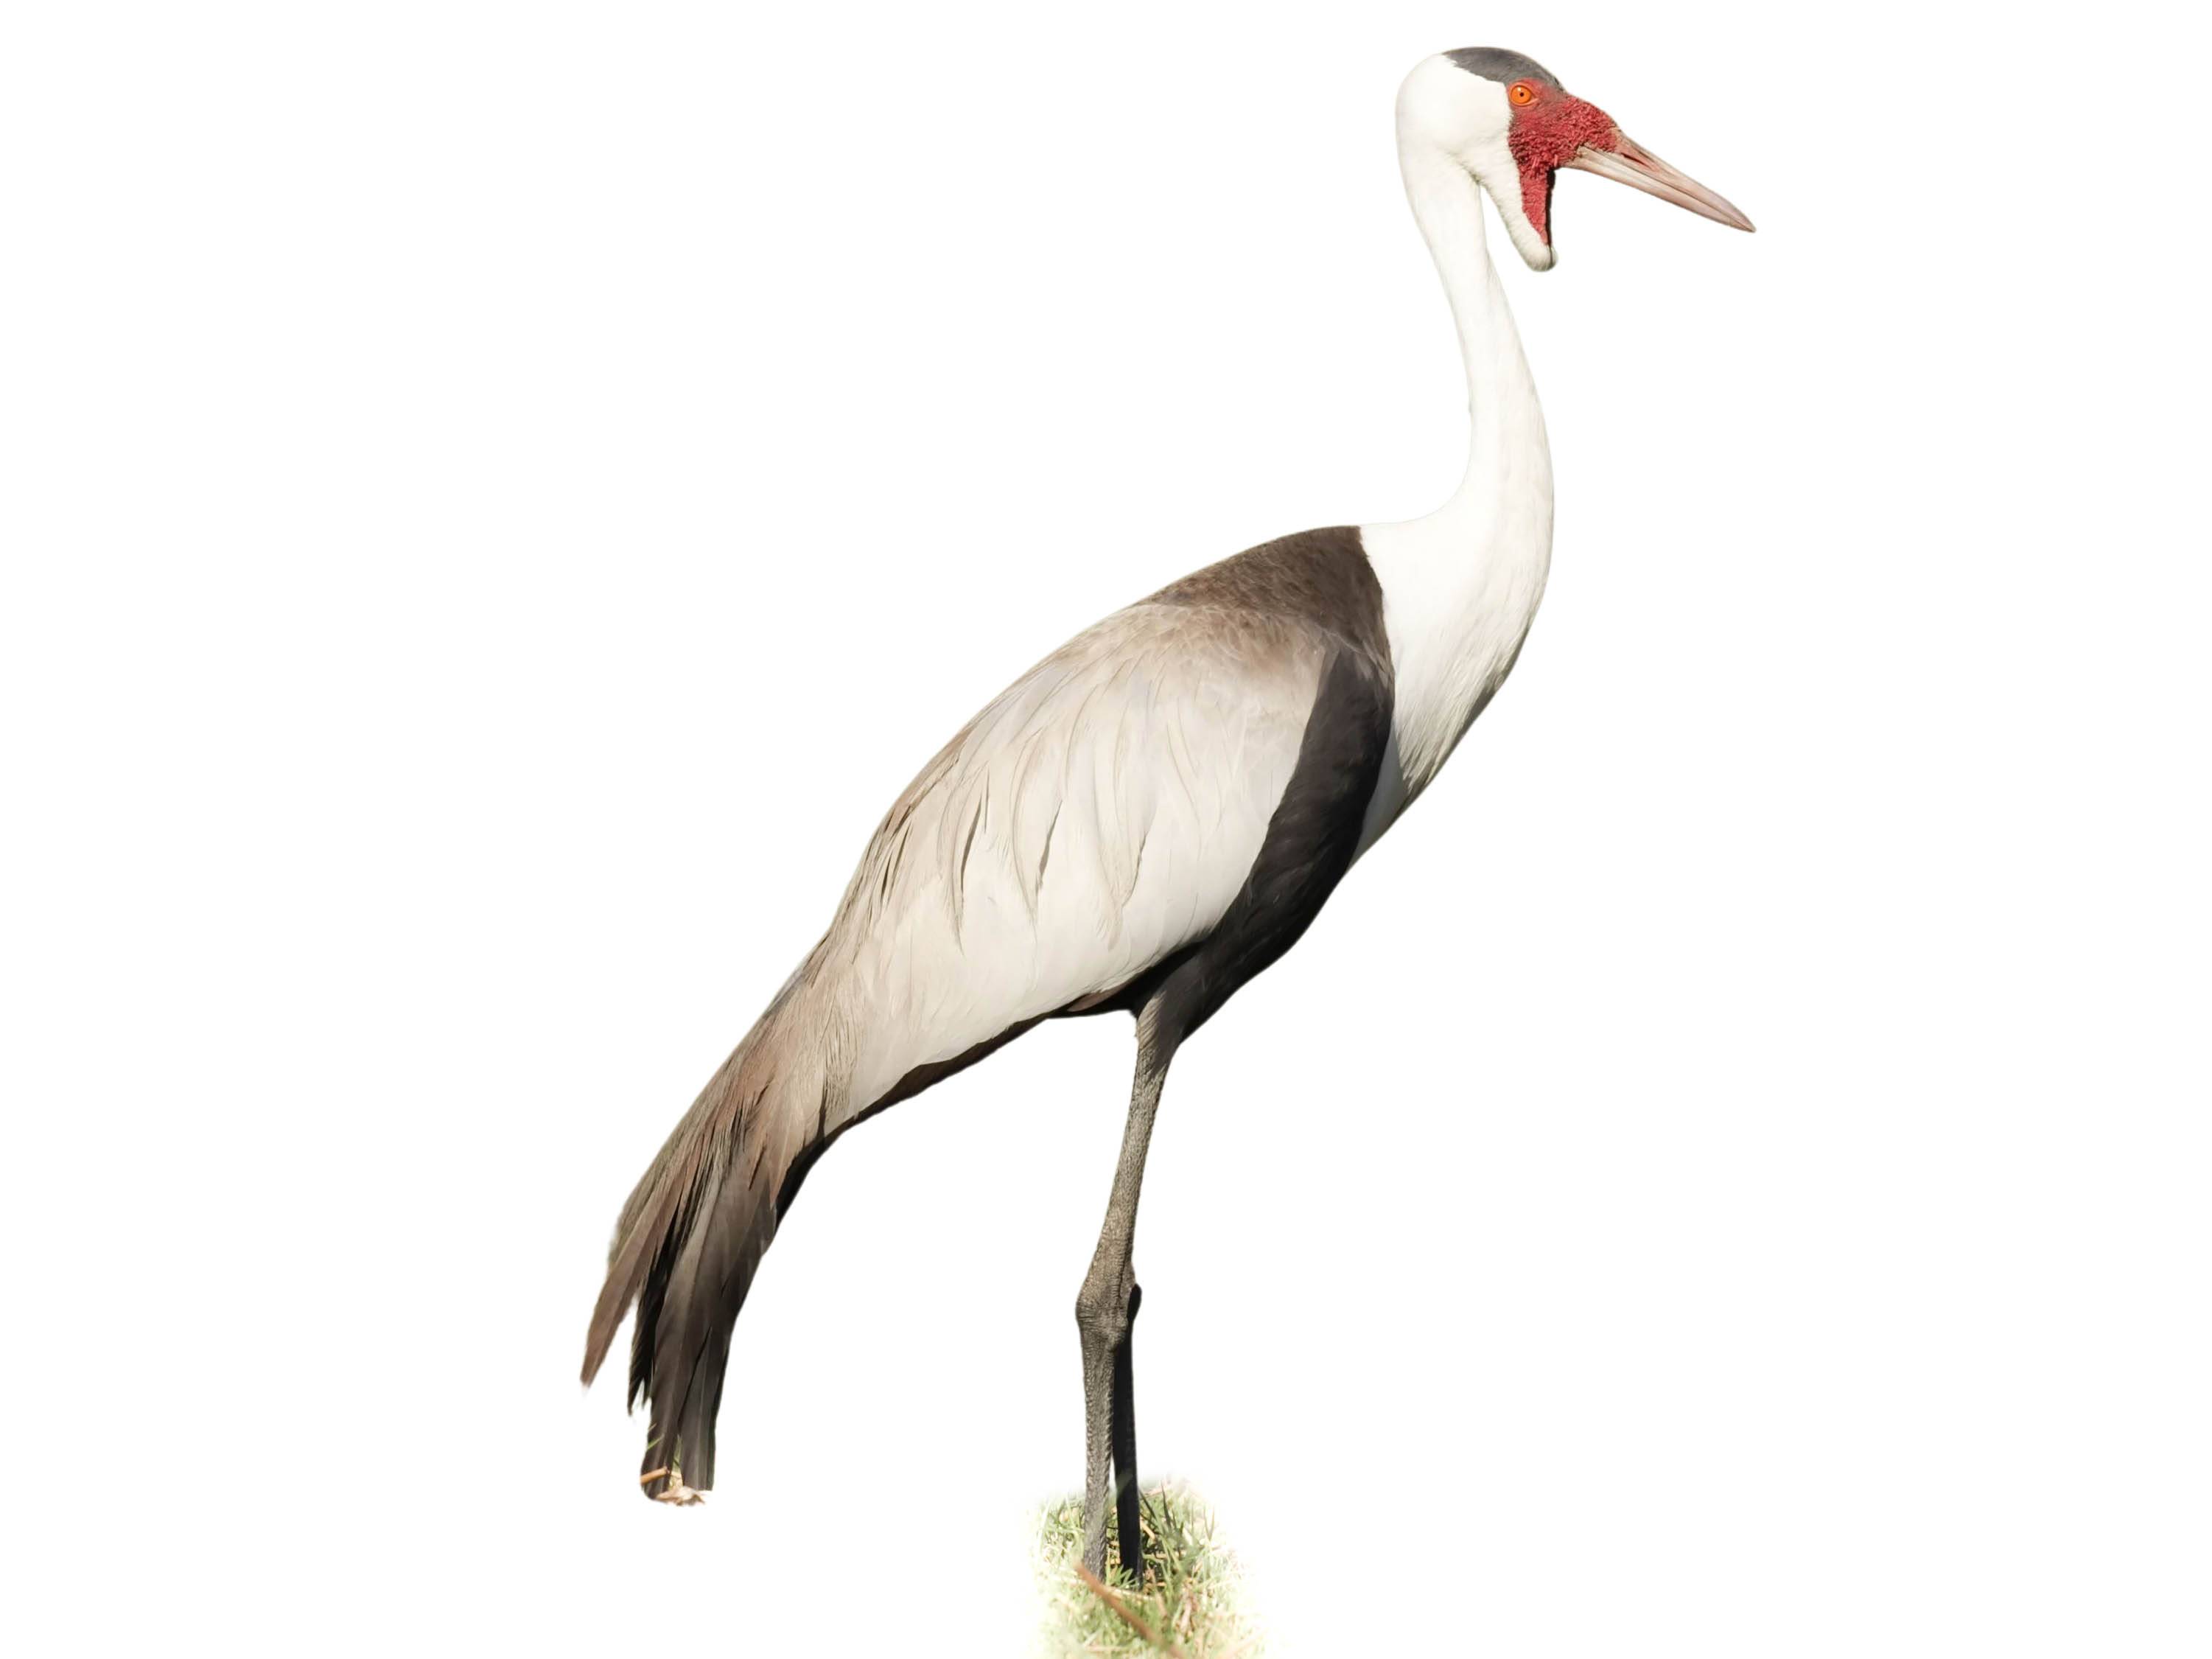 A photo of a Wattled Crane (Grus carunculata)